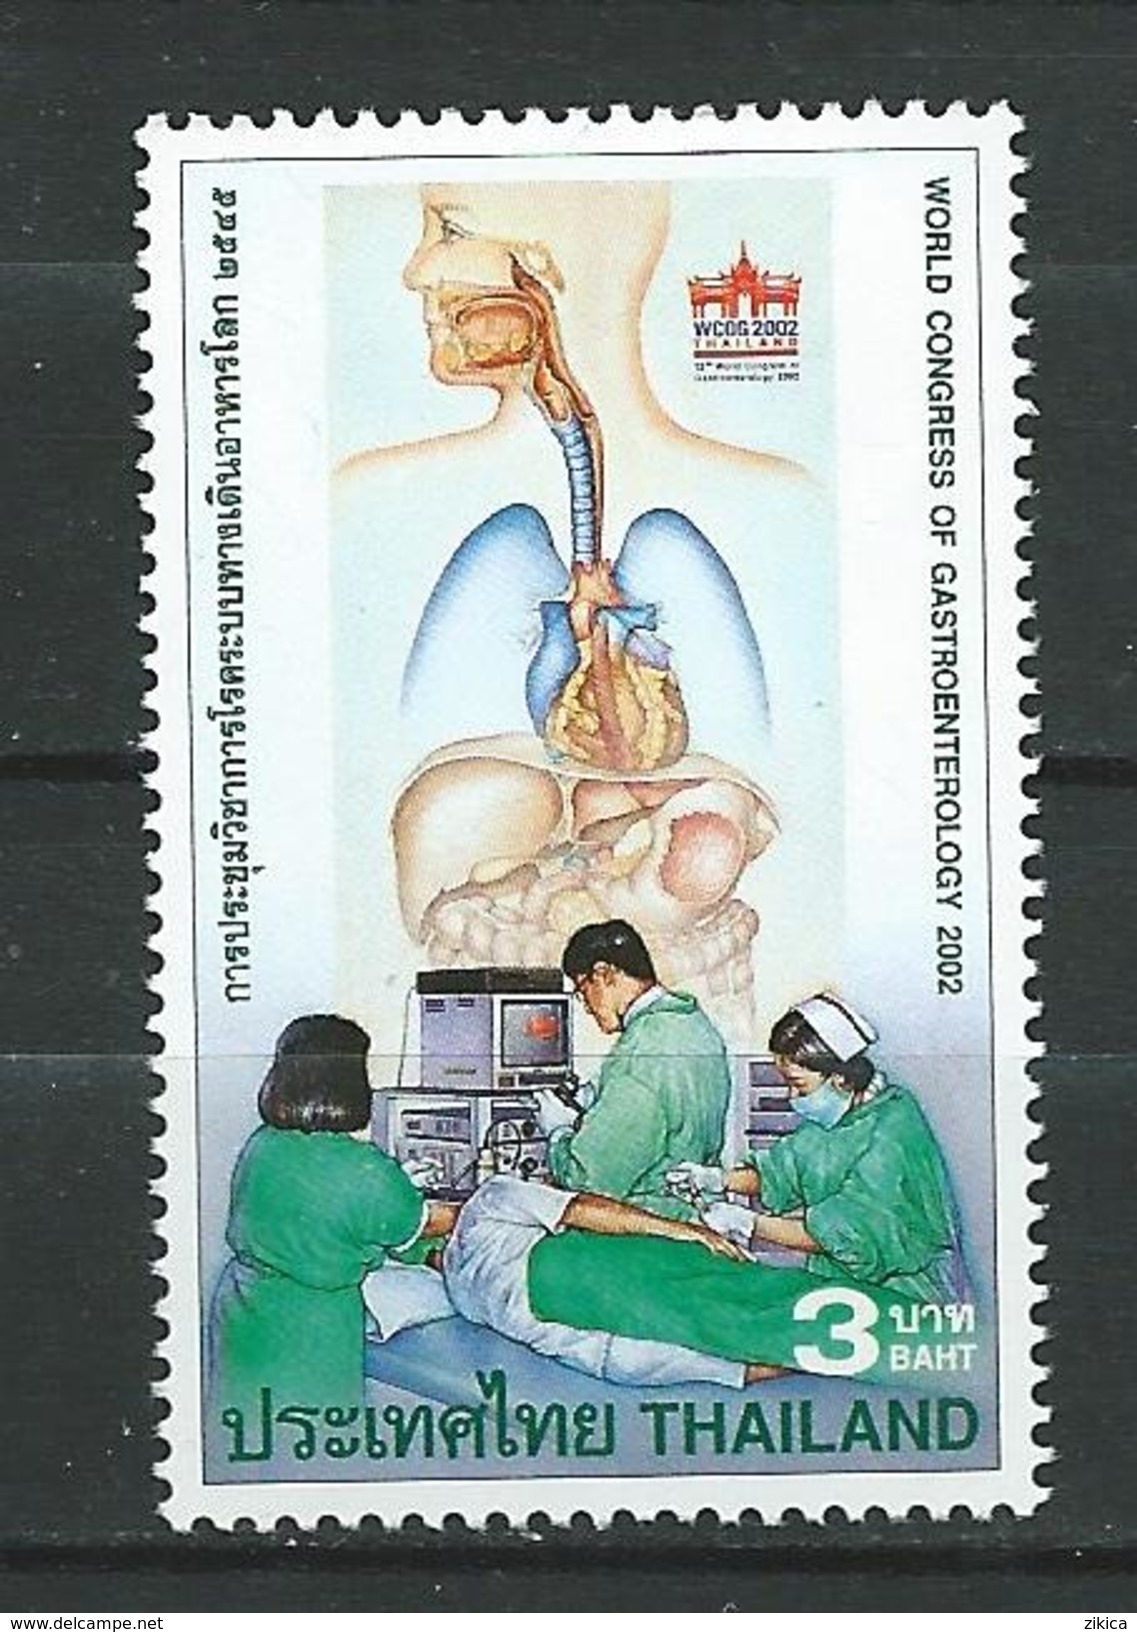 Thailand 2002 The 12th World Congress Of Gastroenterology, Thailand.medicine.MNH - Thailand